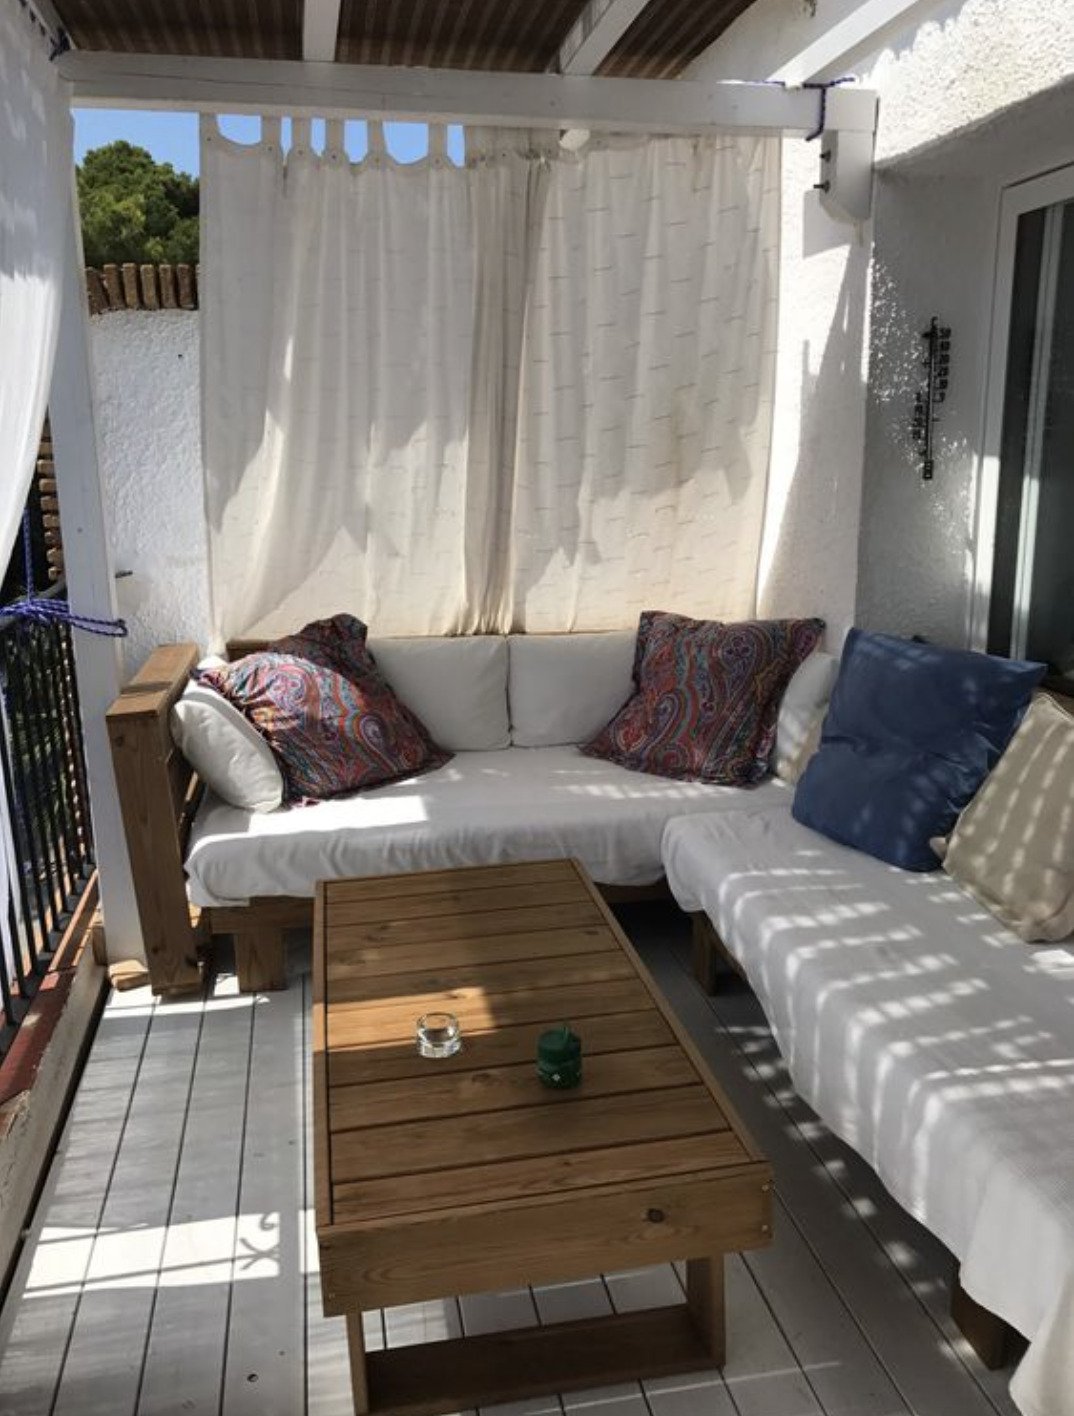 καναπές μπαλκόνι κουρτίνες ήλιος σκίαση